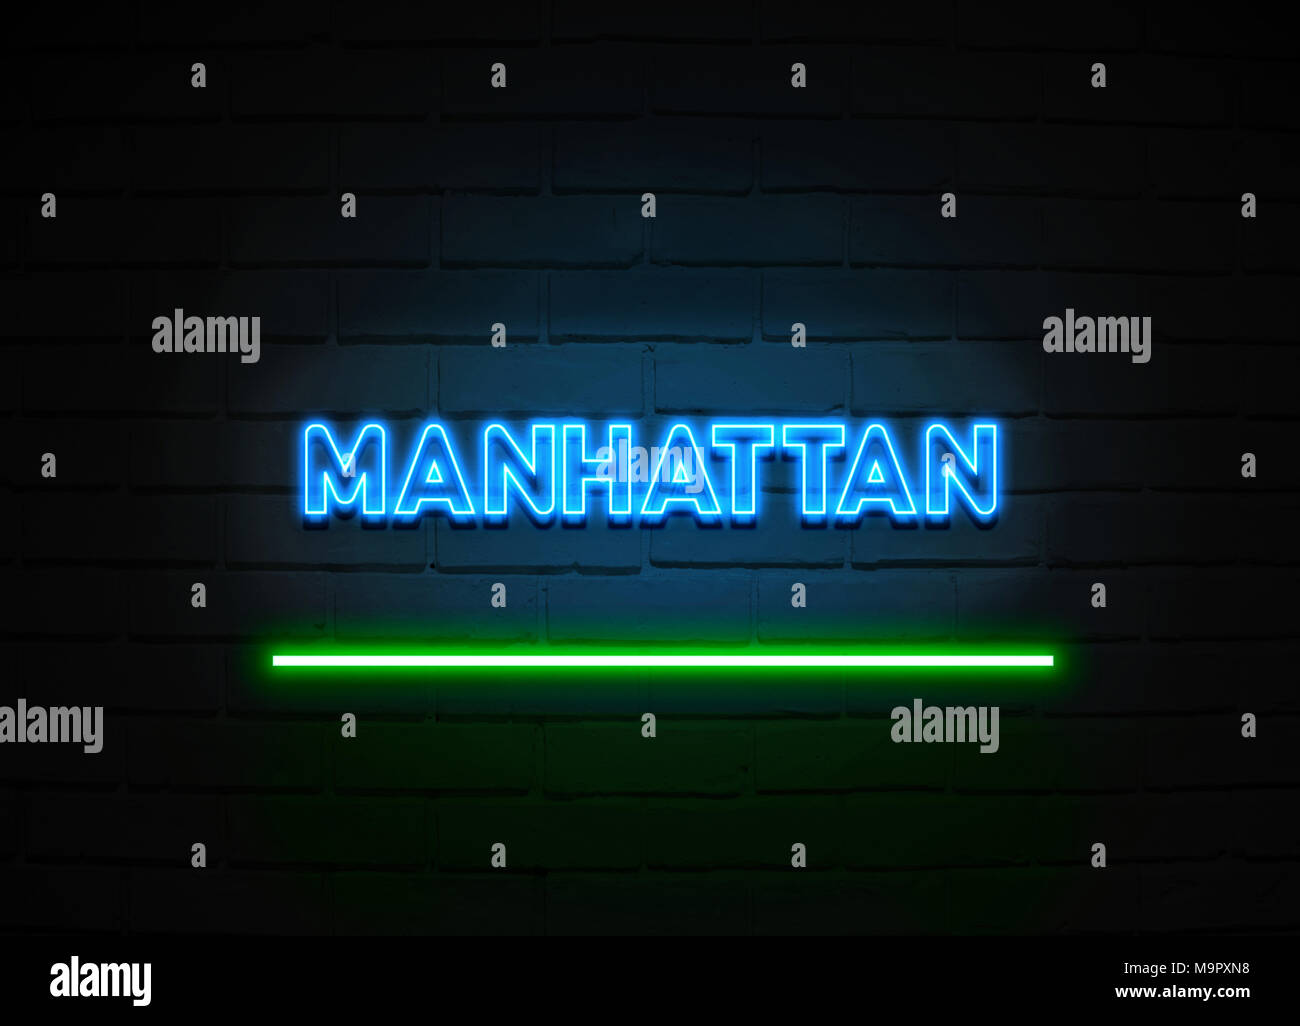 Manhattan Leuchtreklame - glühende Leuchtreklame auf brickwall Wand - 3D-Royalty Free Stock Illustration dargestellt. Stockfoto